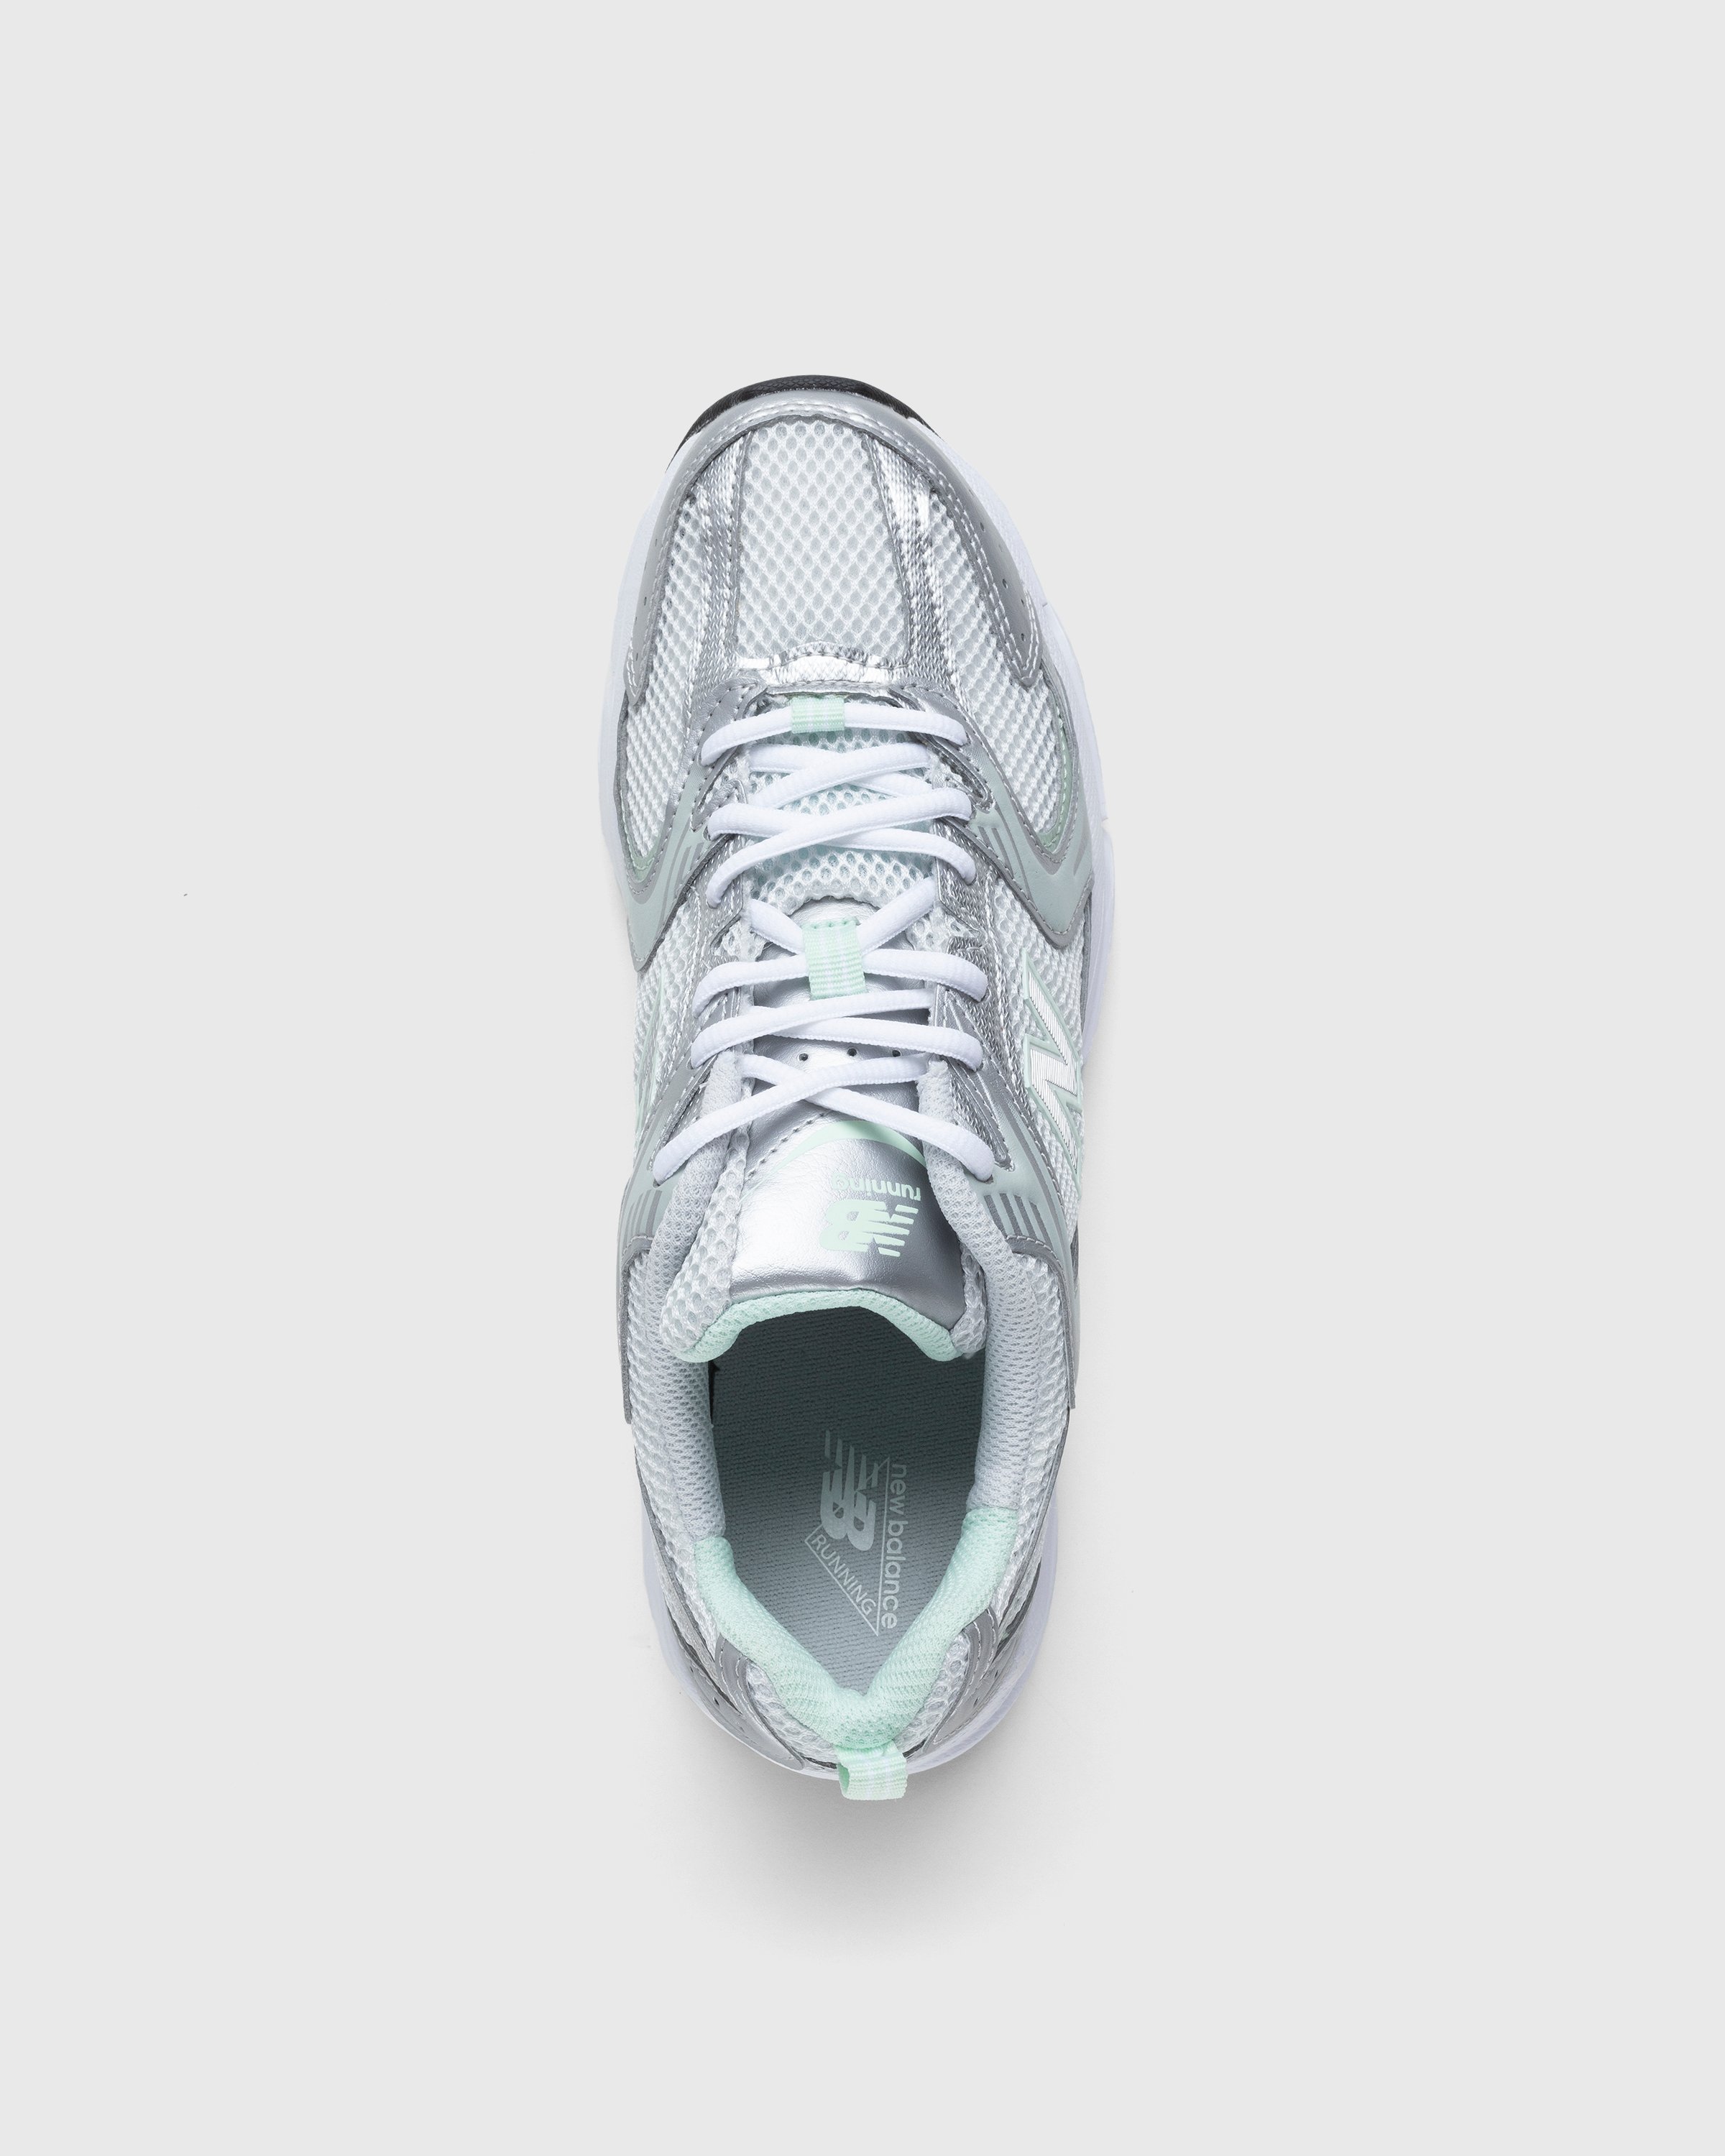 New Balance - MR530ZEL Cosmic Jade - Footwear - Silver - Image 5